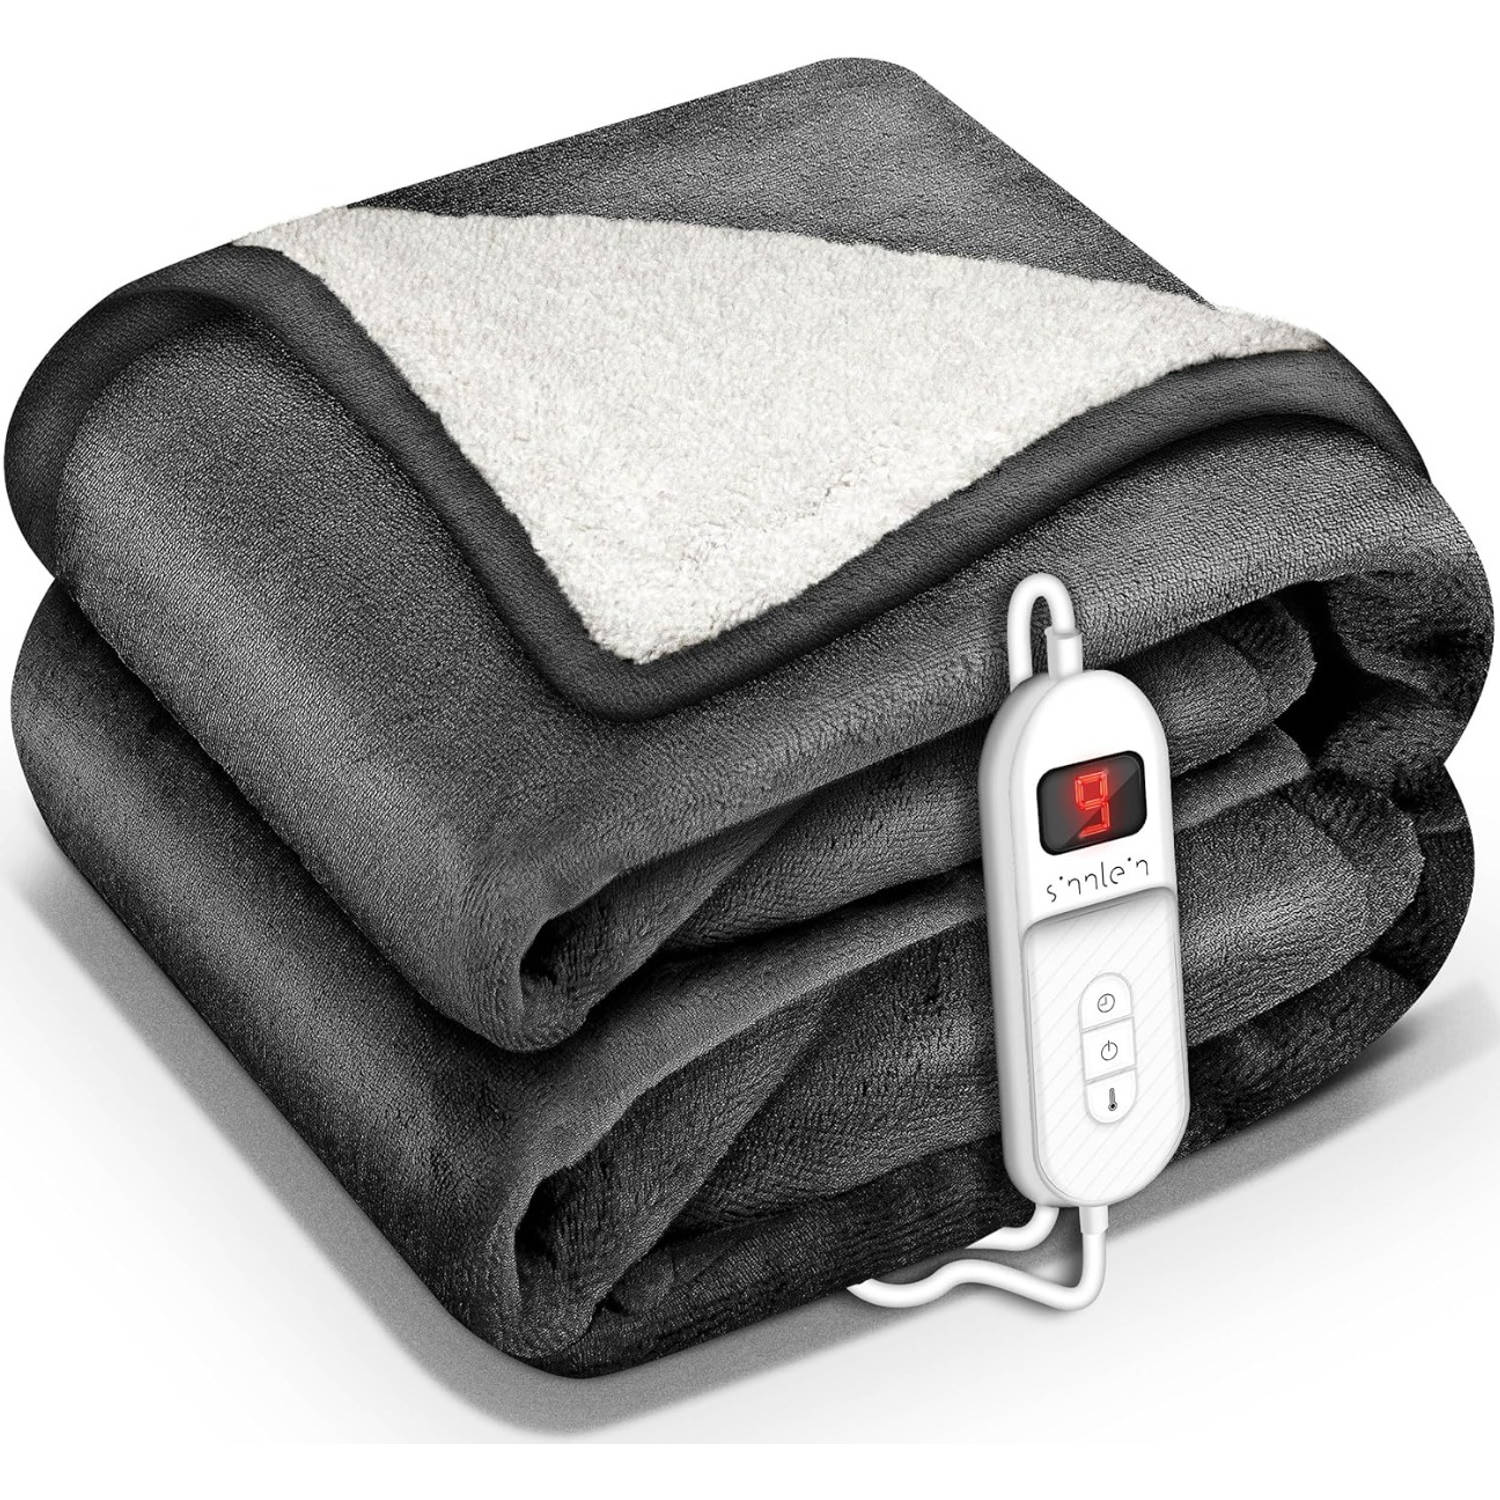 Sinnlein- Elektrische deken met automatische uitschakeling, antraciet, 200 x 180 cm, warmtedeken met 9 temperatuurniveaus, knuffeldeken, wasbaar